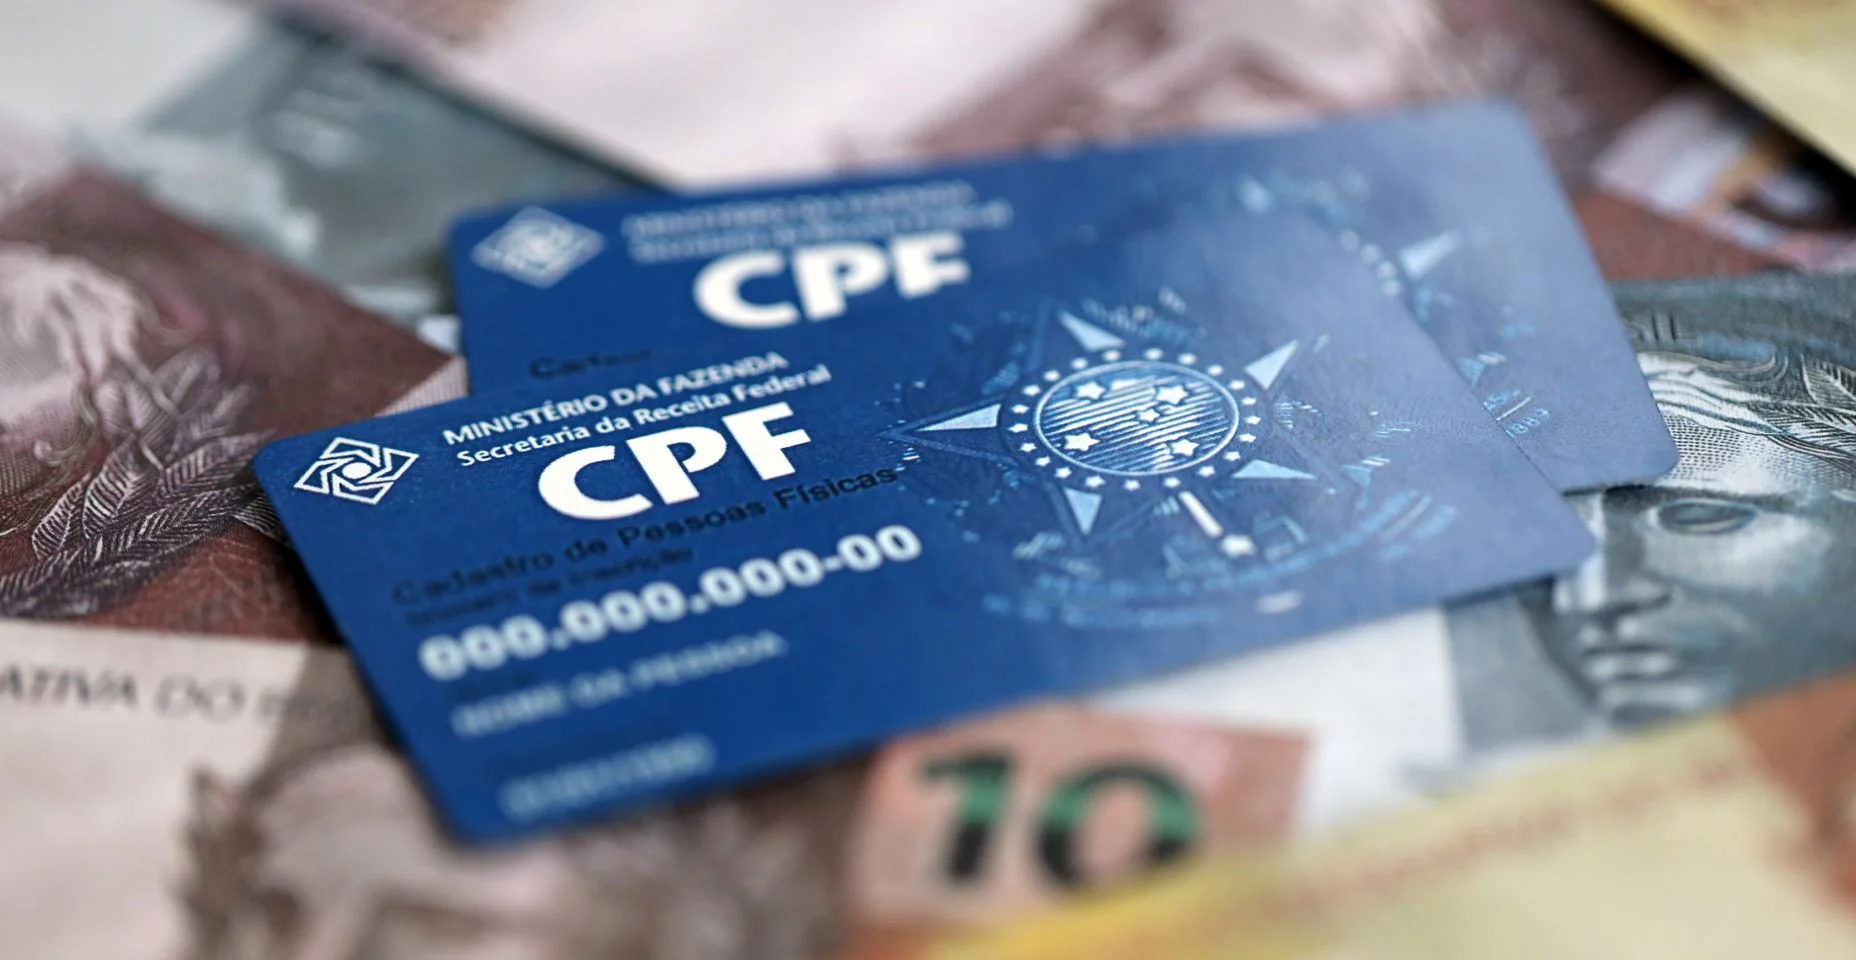 Modelo de documento de cartão CPF azul. O documento garante autenticidade e integridade na comunicação eletrônica entre pessoas no Brasil. Cadastro de Pessoa Física